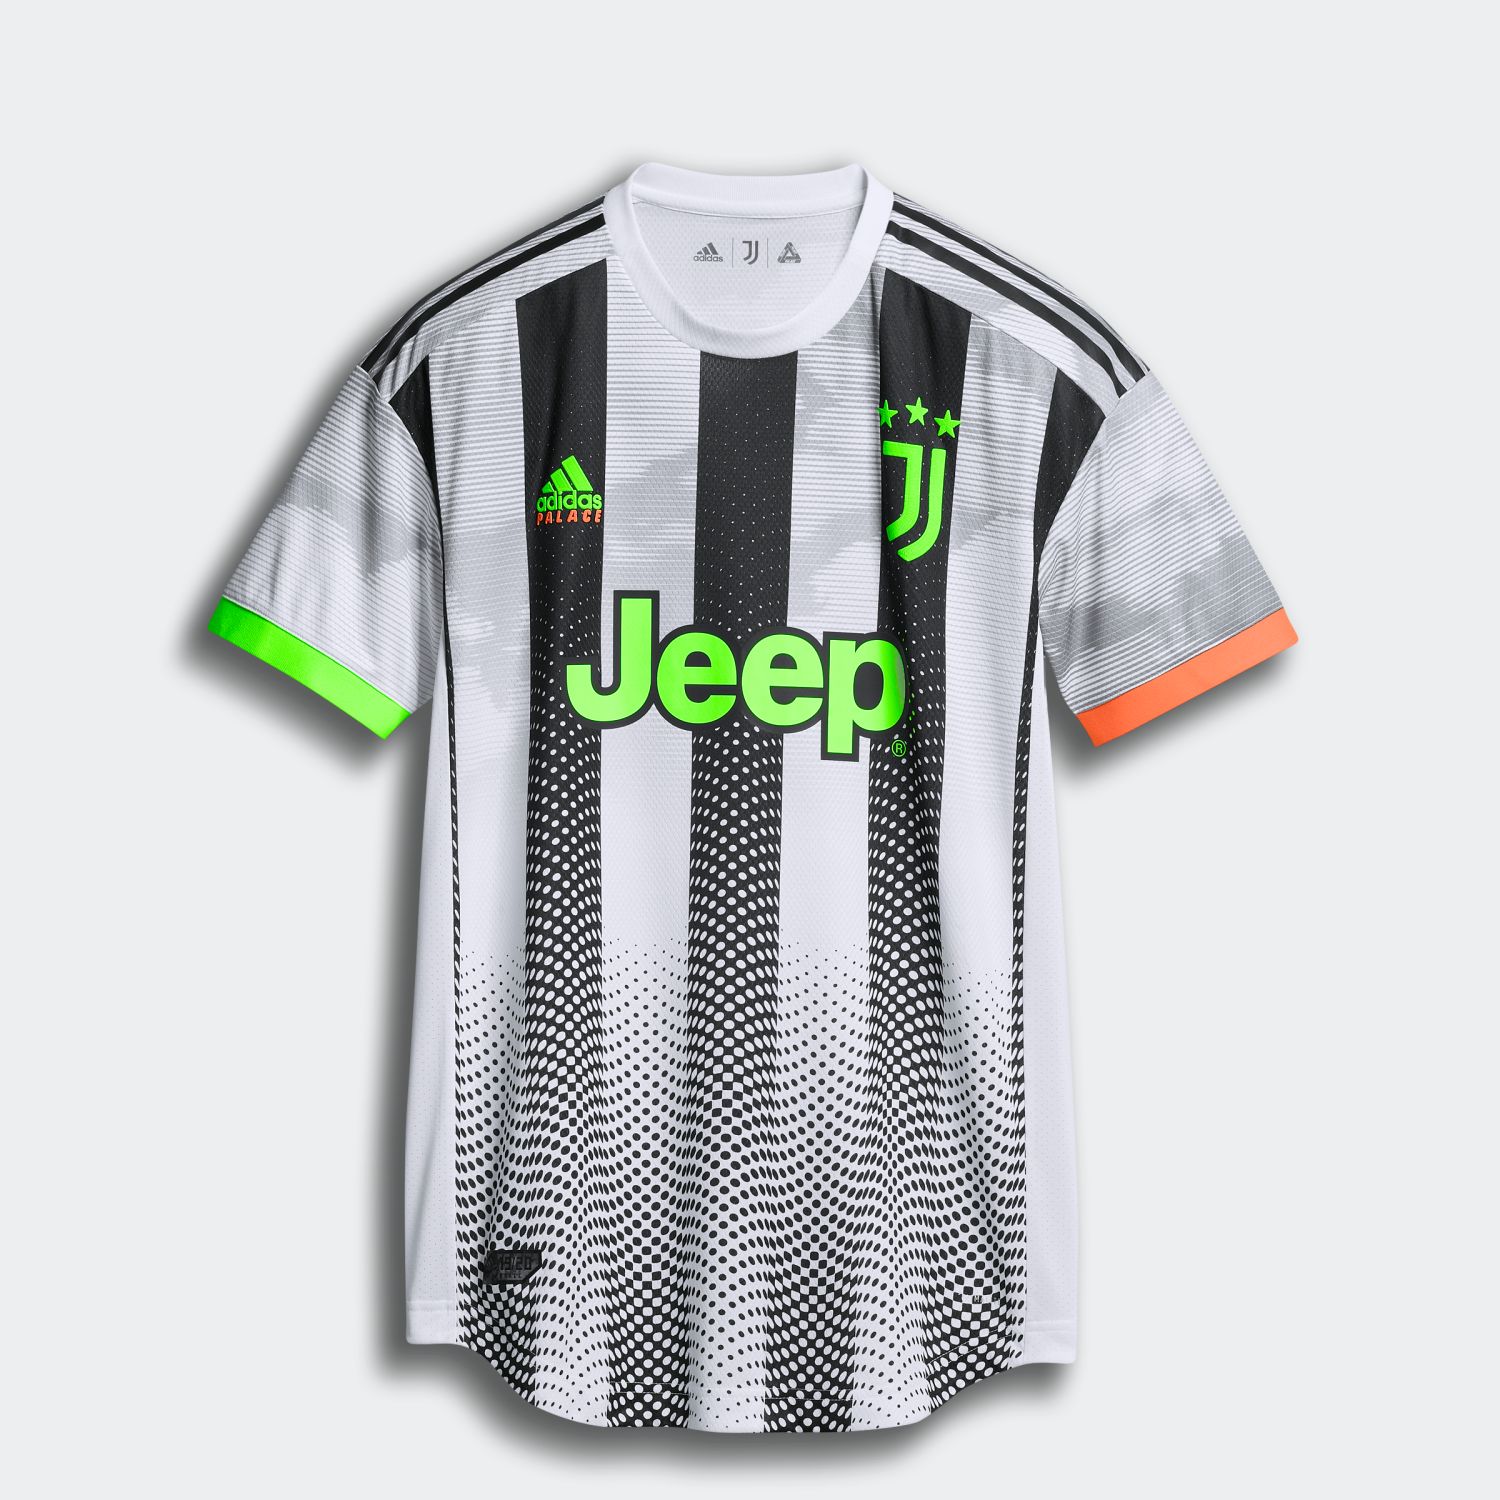 Very Goods Adidas公式通販 ユベントス オーセンティック 4th ジャージー Juventus Authentic Fourth Jersey Iec77 メンズ サッカー ユニフォーム アディダス オンラインショップ